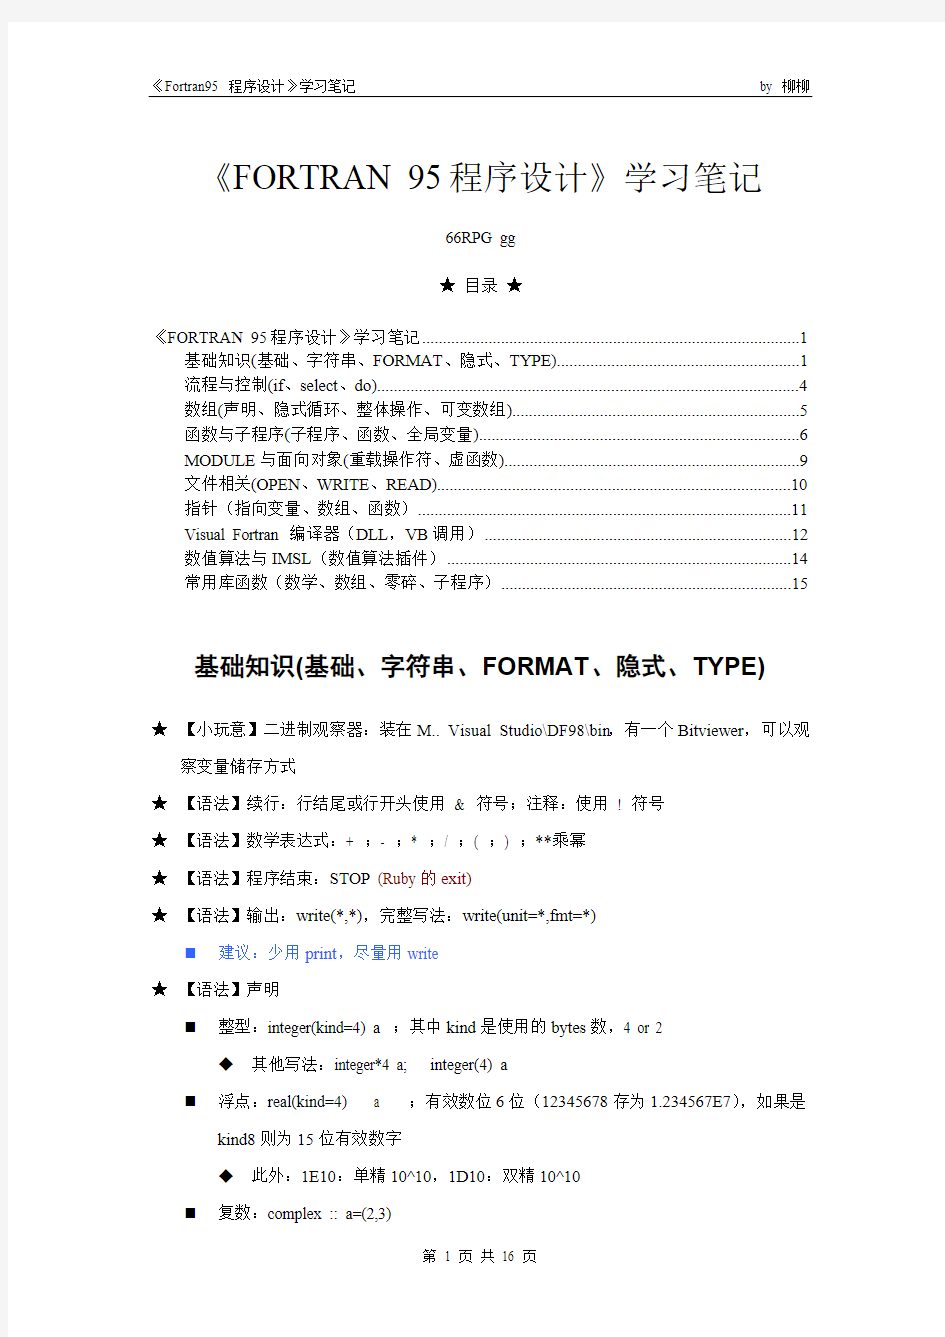 (完整)《FORTRAN 95程序设计》学习笔记